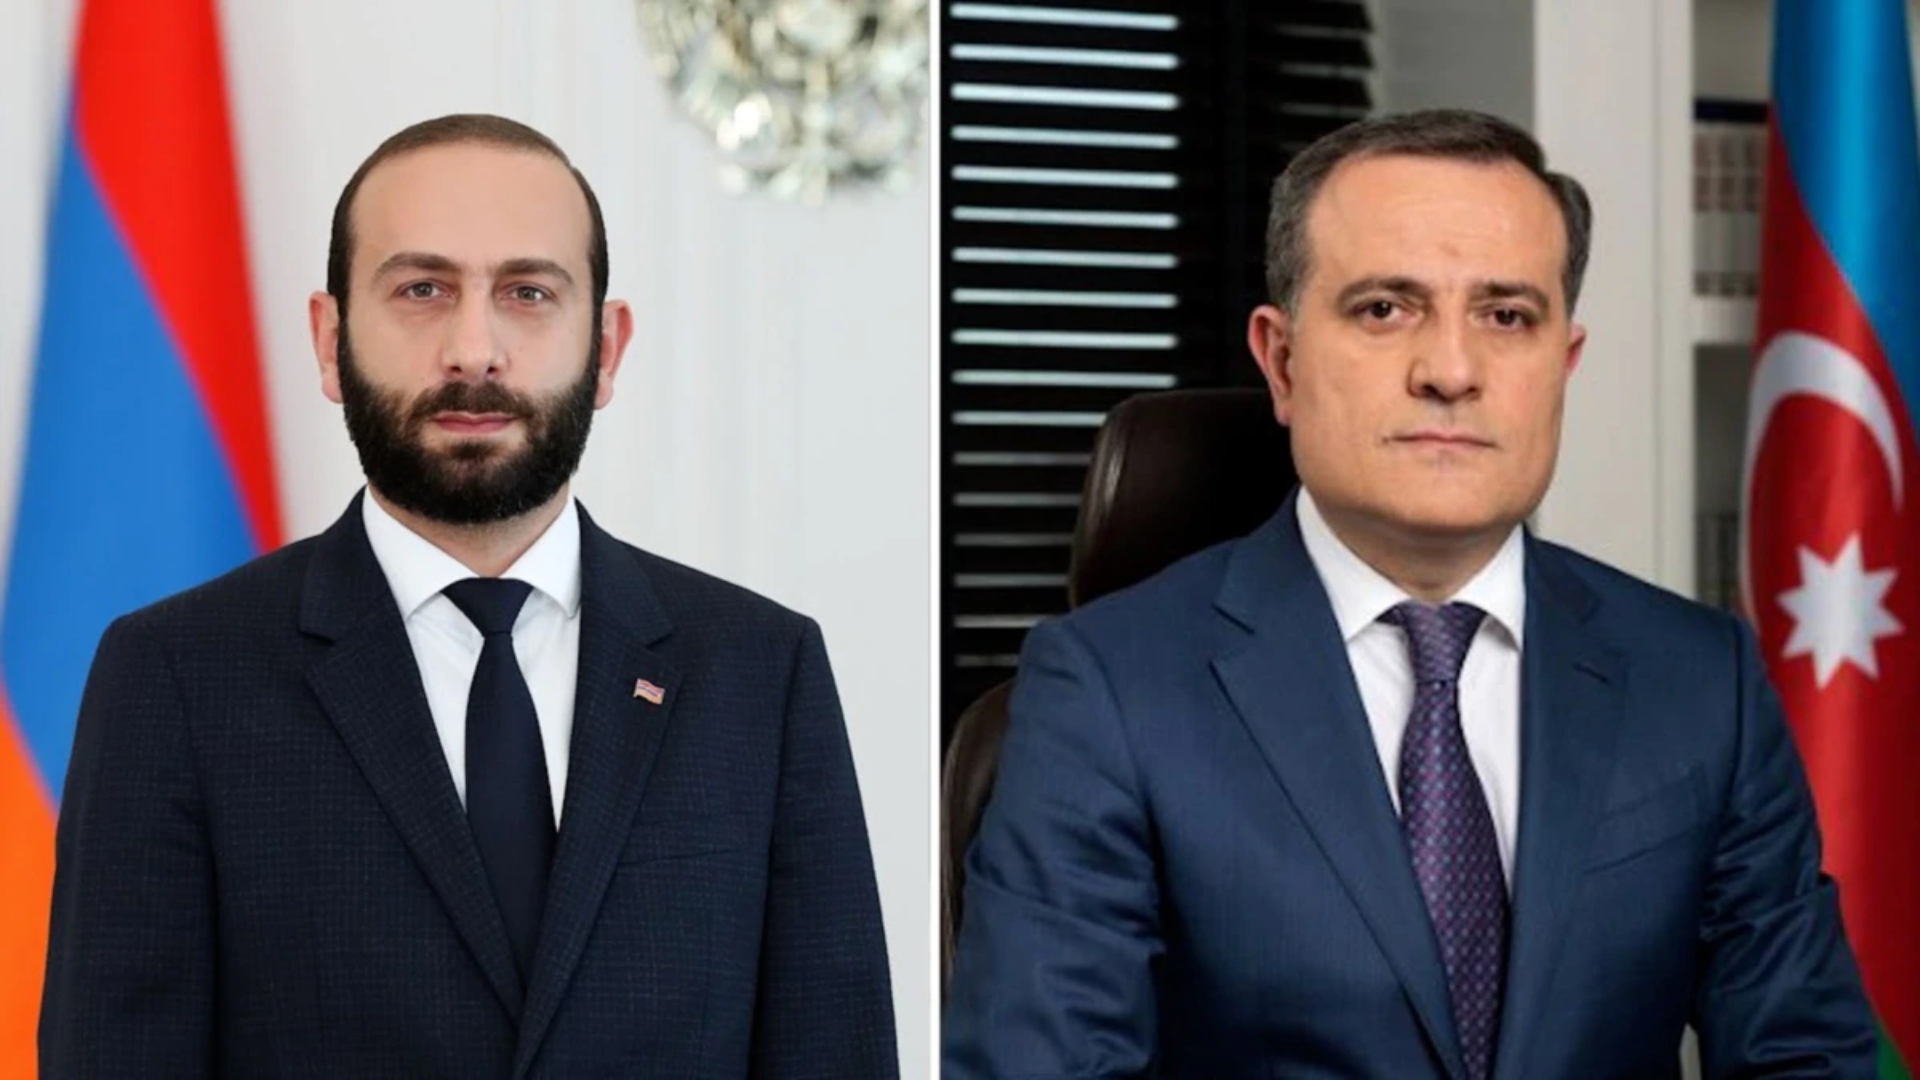 Yerevan denies Aliyev’s claim of Armenia-Azerbaijan meeting in Brussels next month